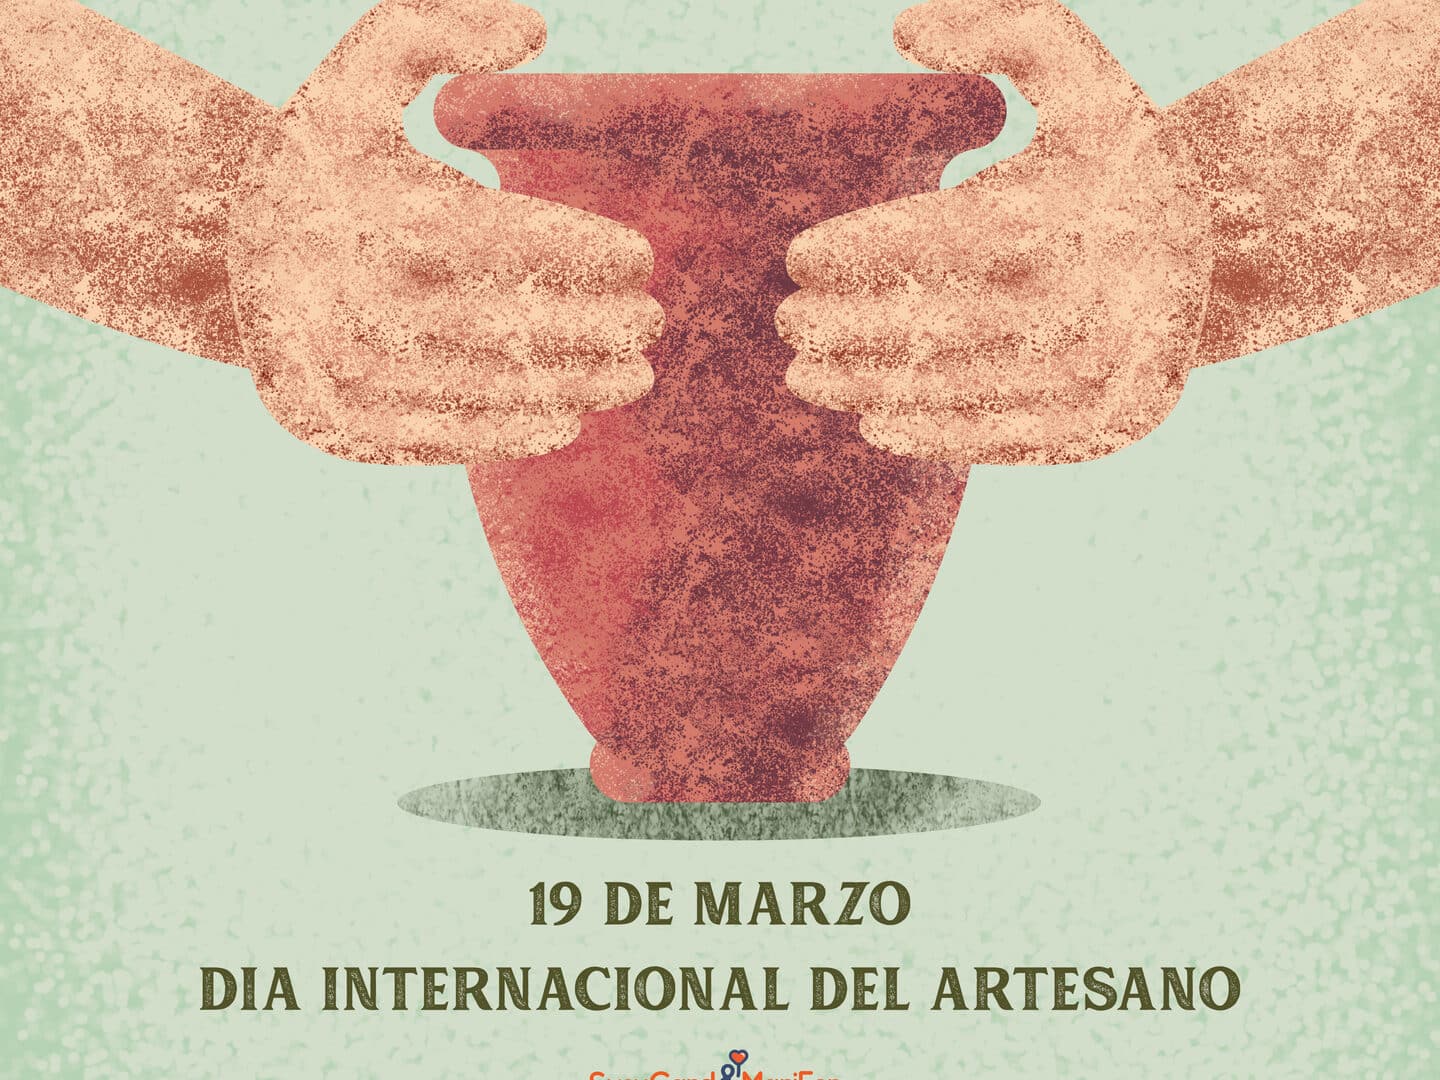 dia internacional del artesano 19 de marzo